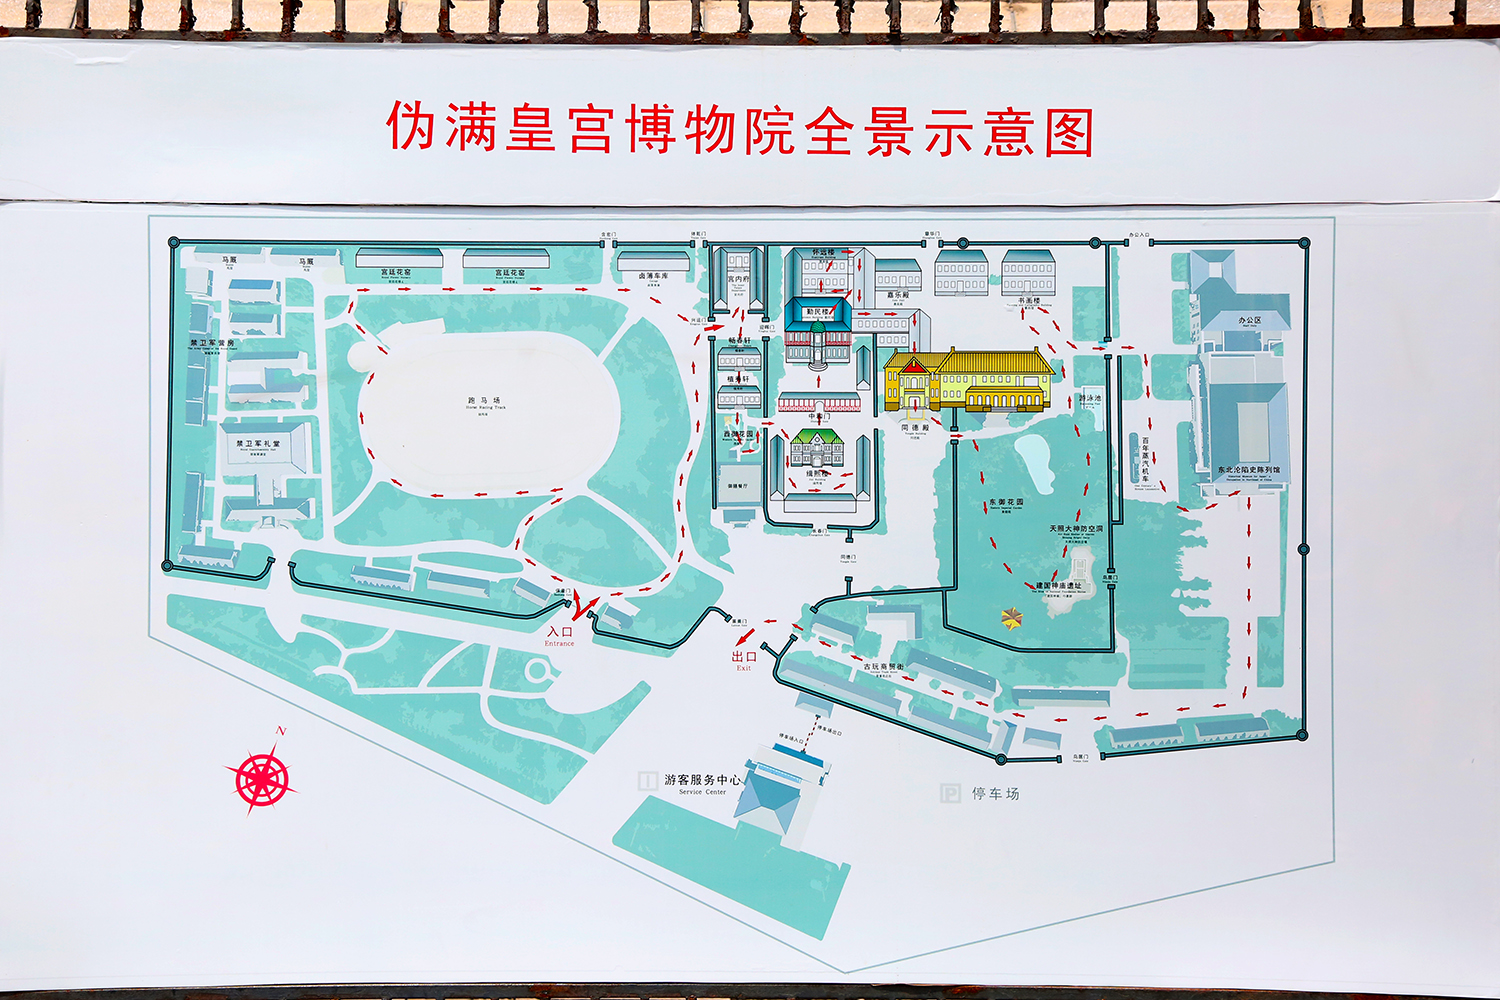 伪满皇宫博物院占地面积2505万平方米,开